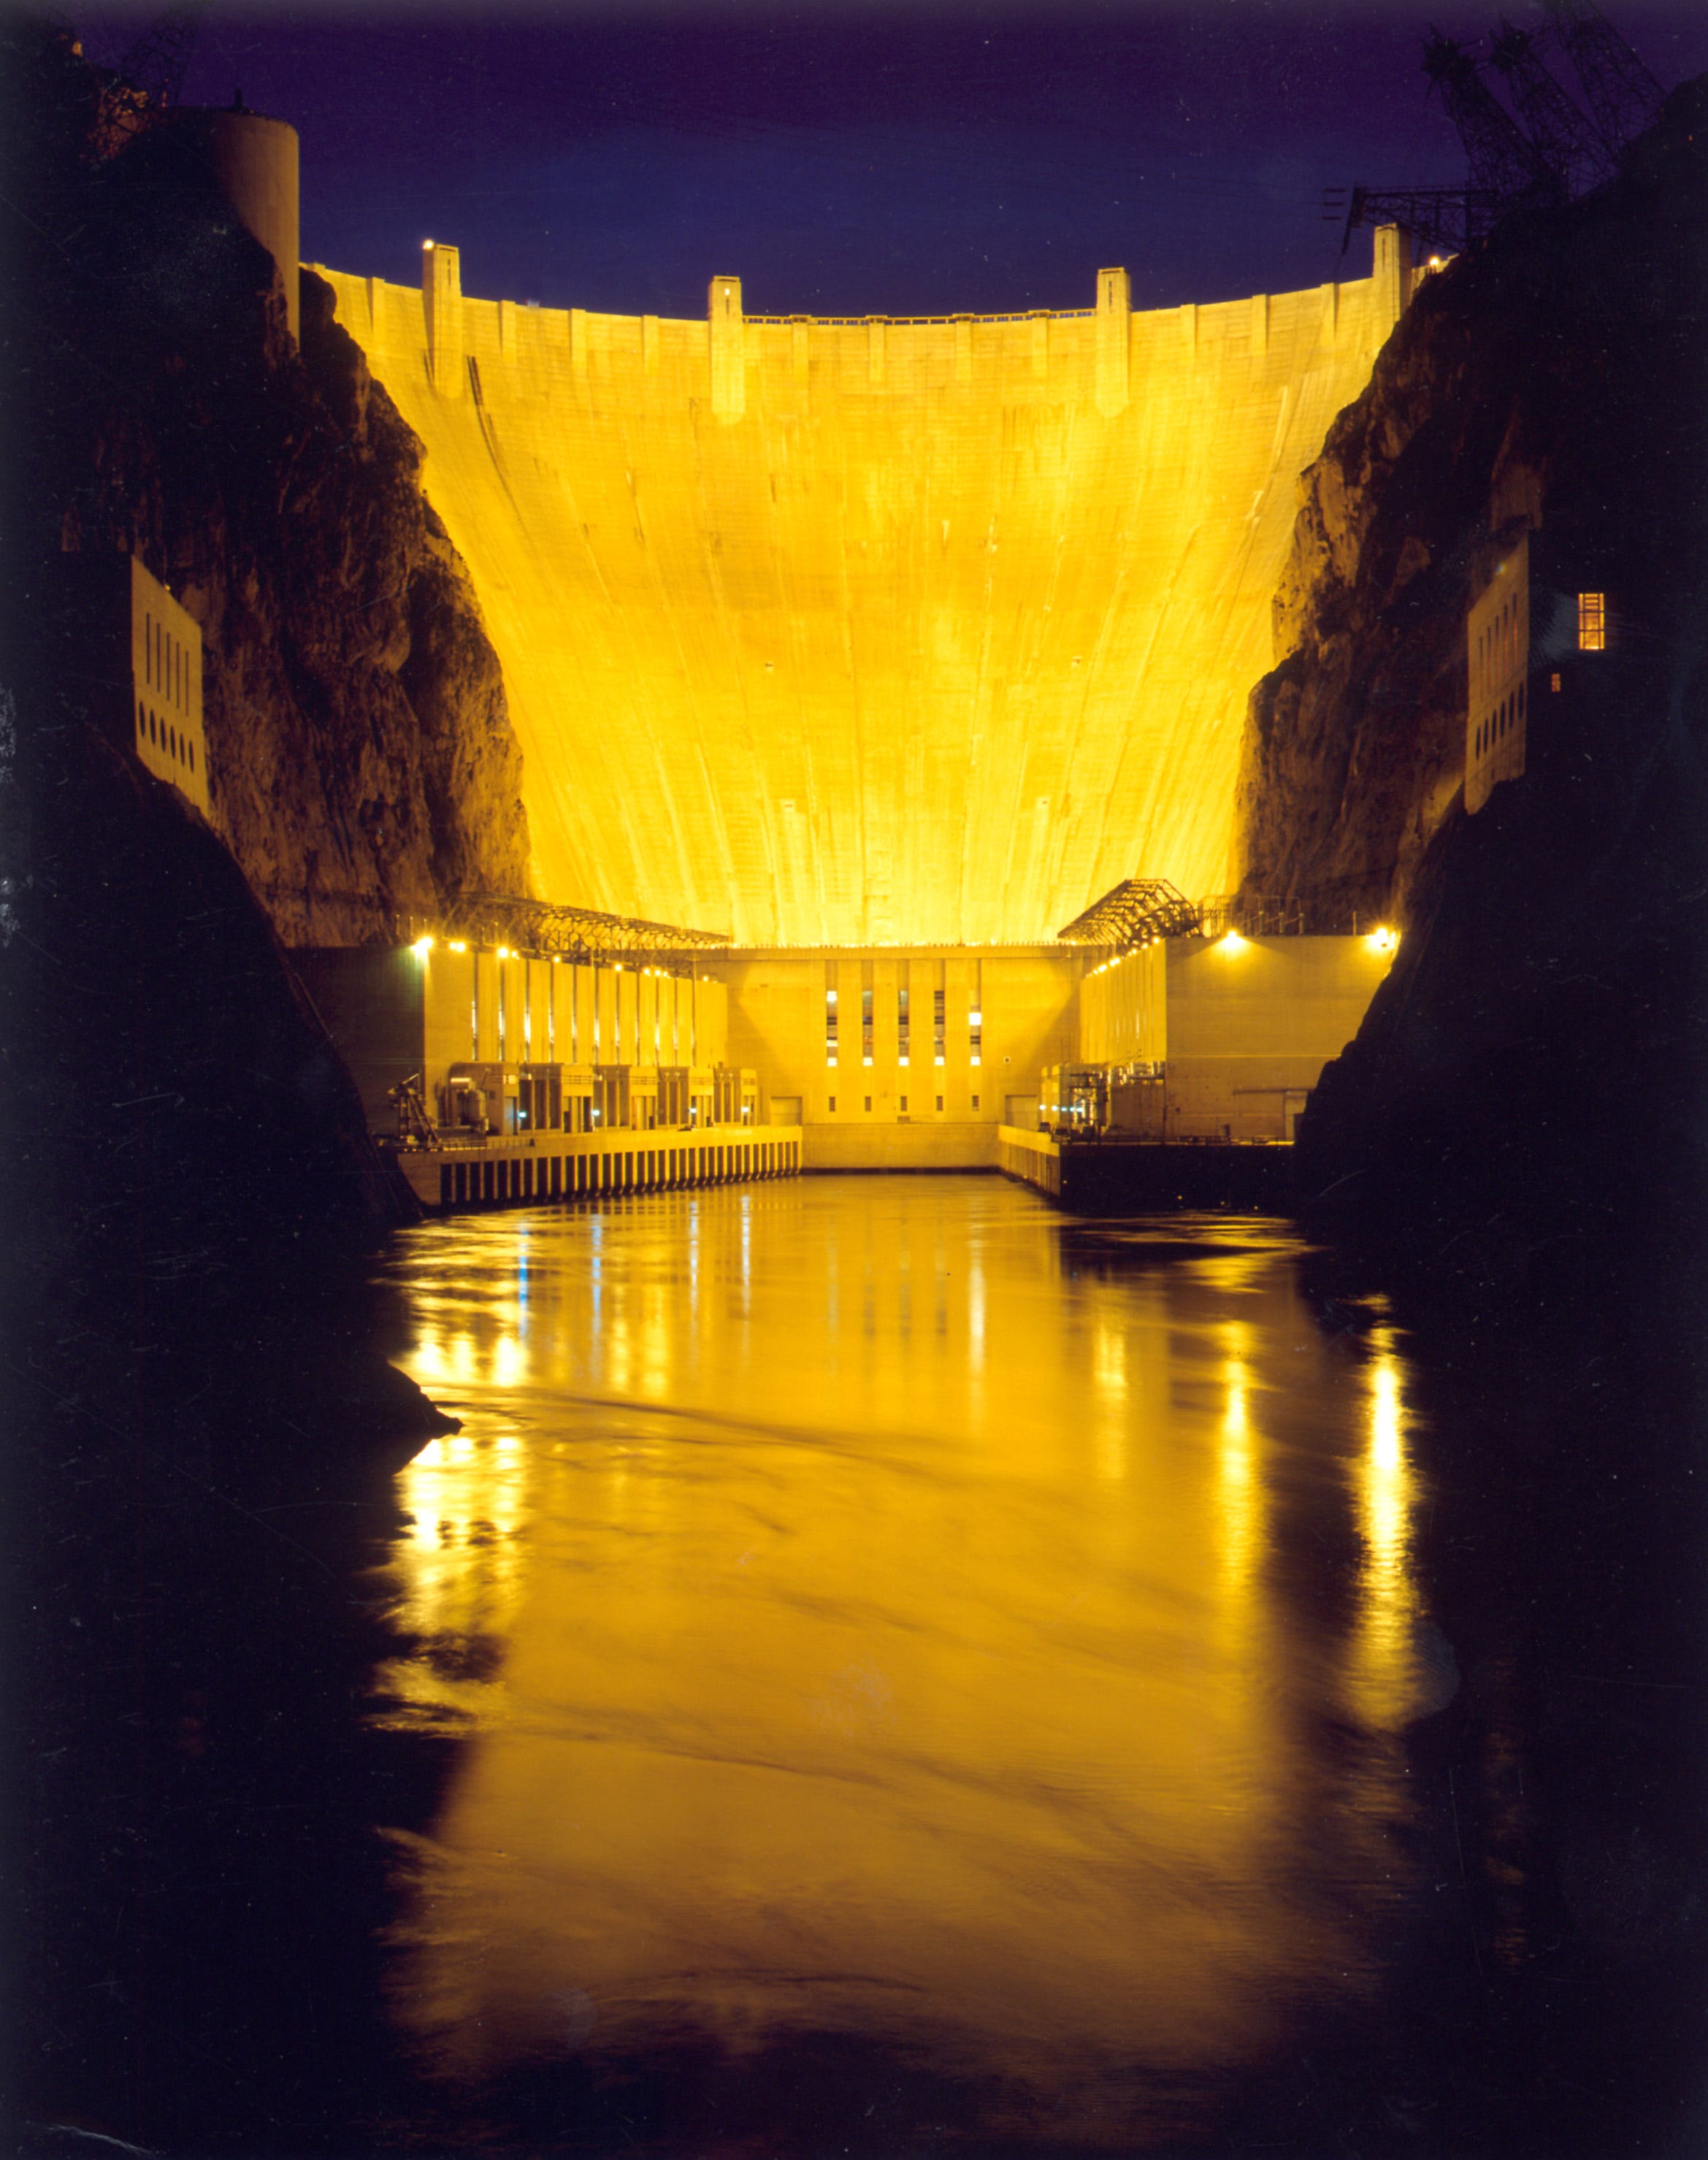 The Hoover Dam, illuminated at night in breathtaking brilliant incandescent splendor